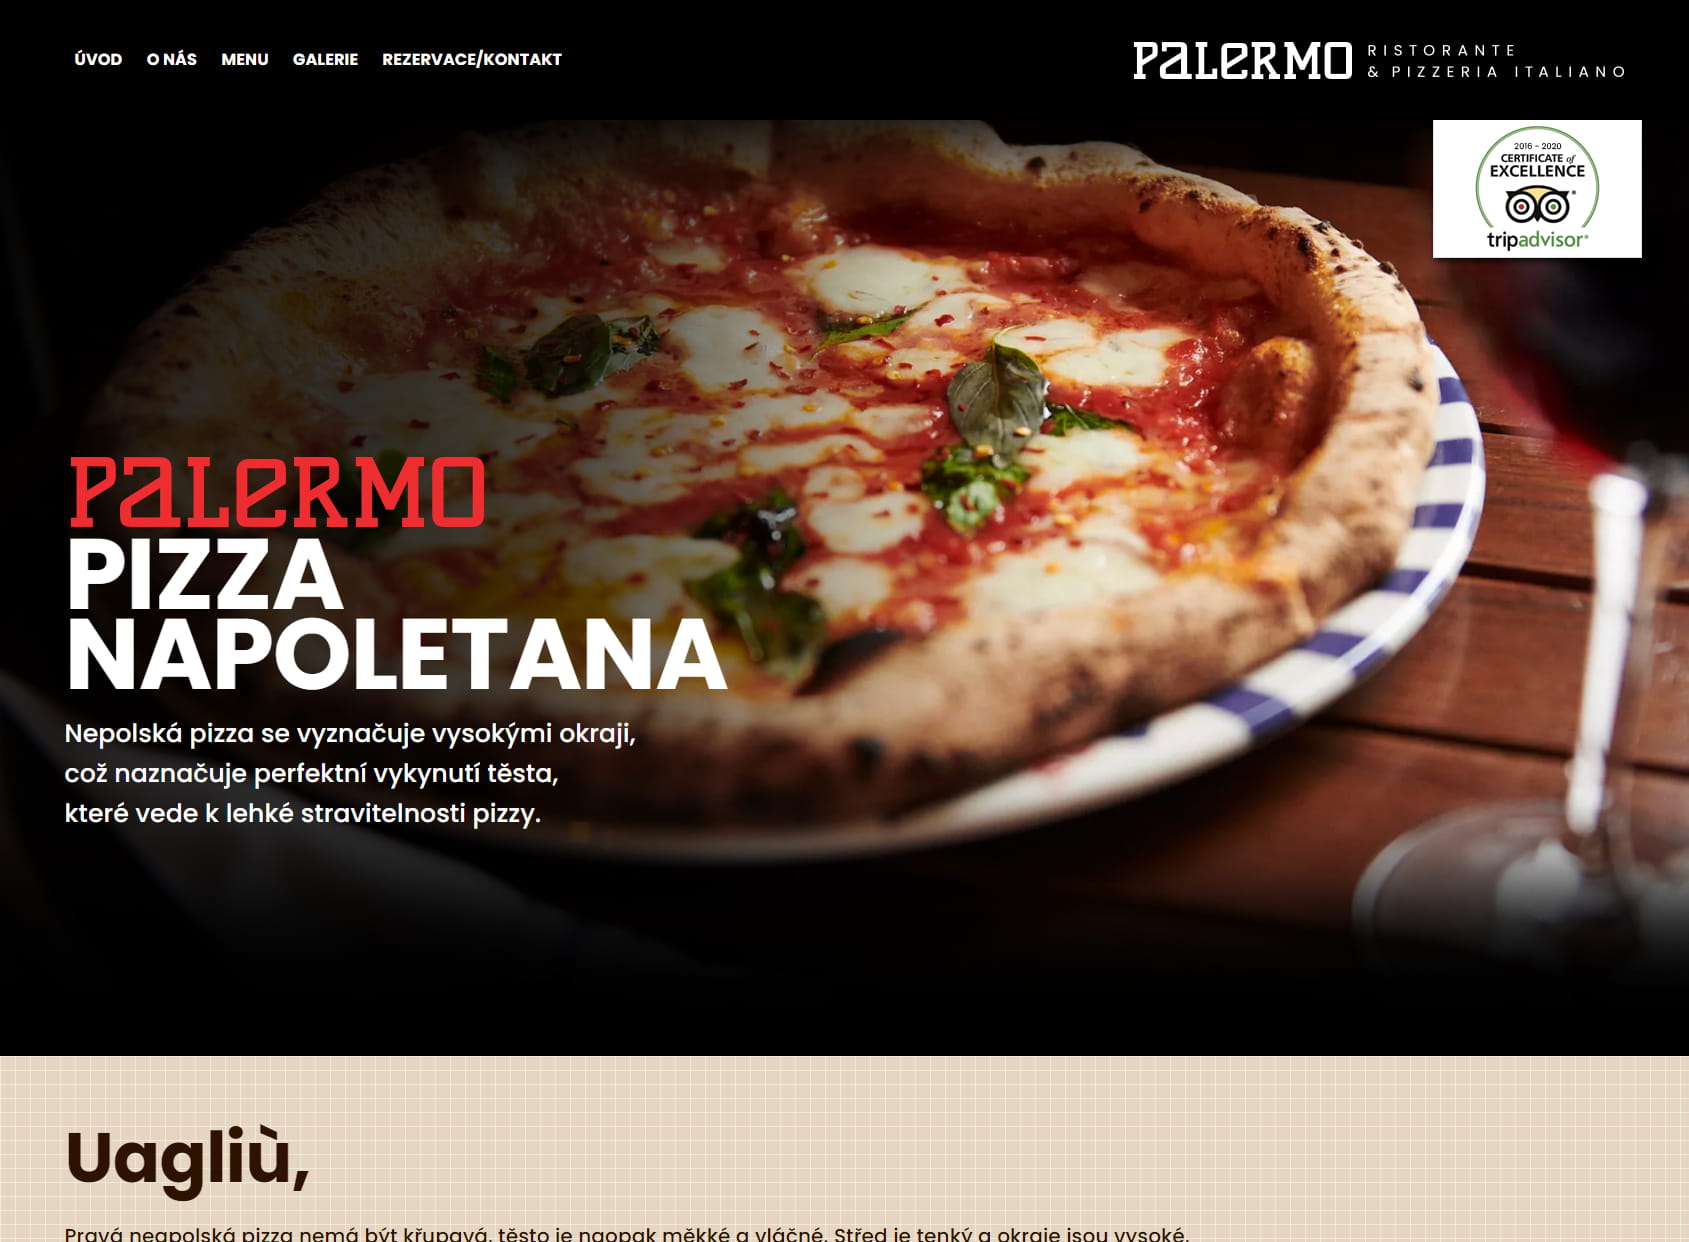 Ristorante pizzeria Palermo - pizza napoletana, pravá neapolská pizza z pece na dřevo